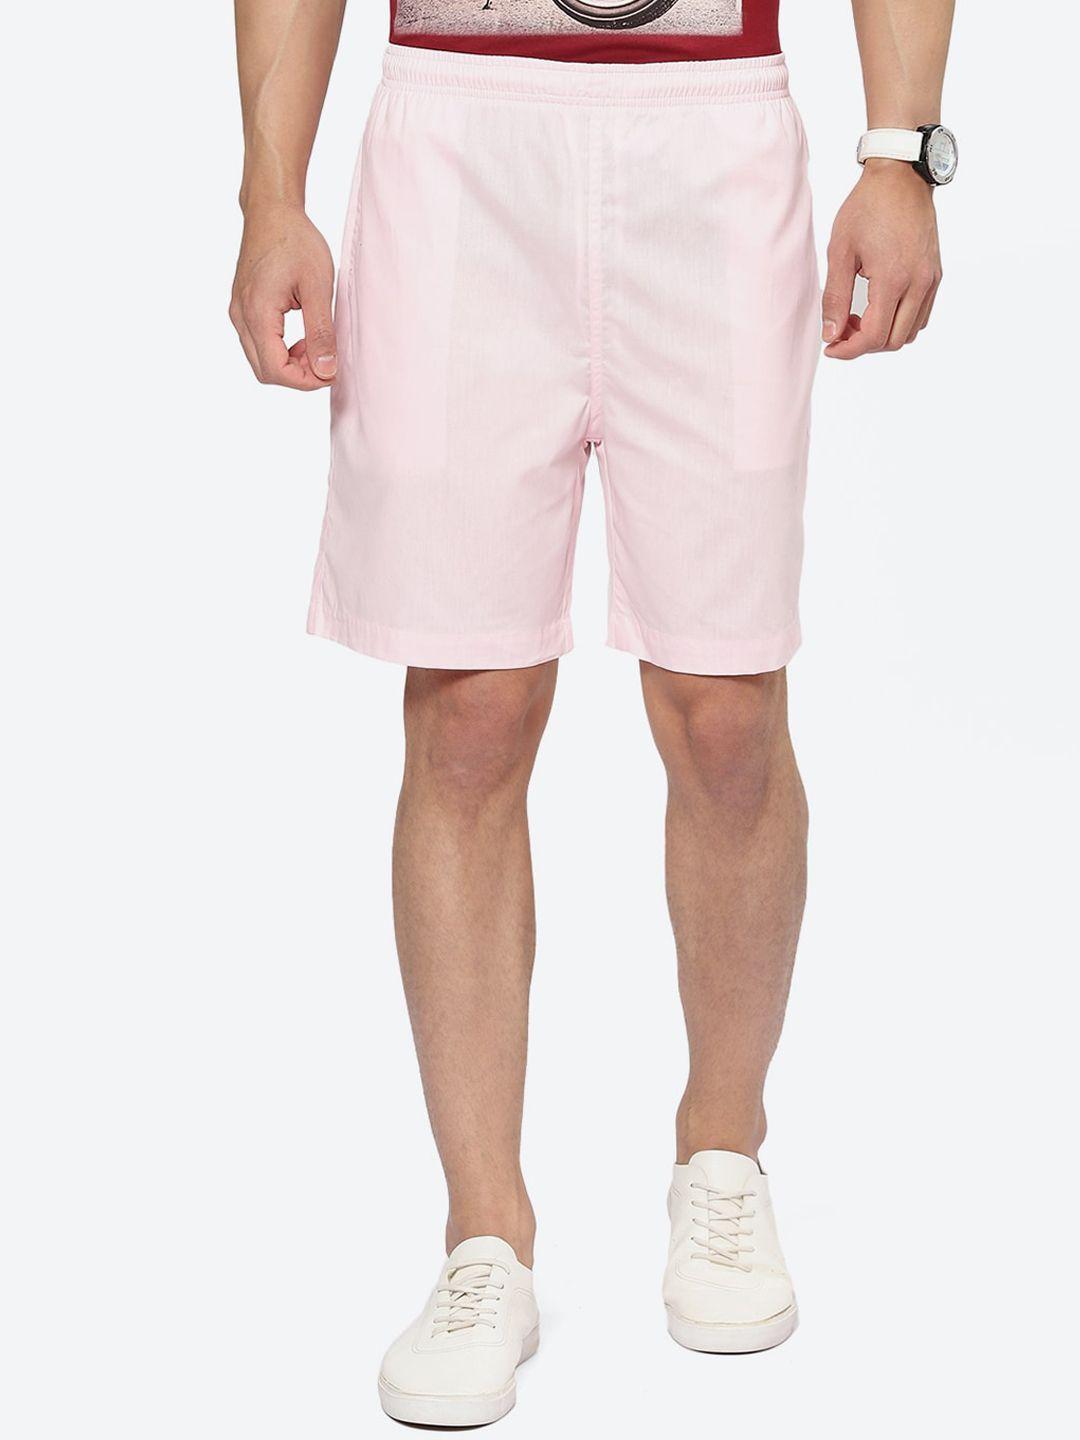 2bme men mid-rise cotton shorts